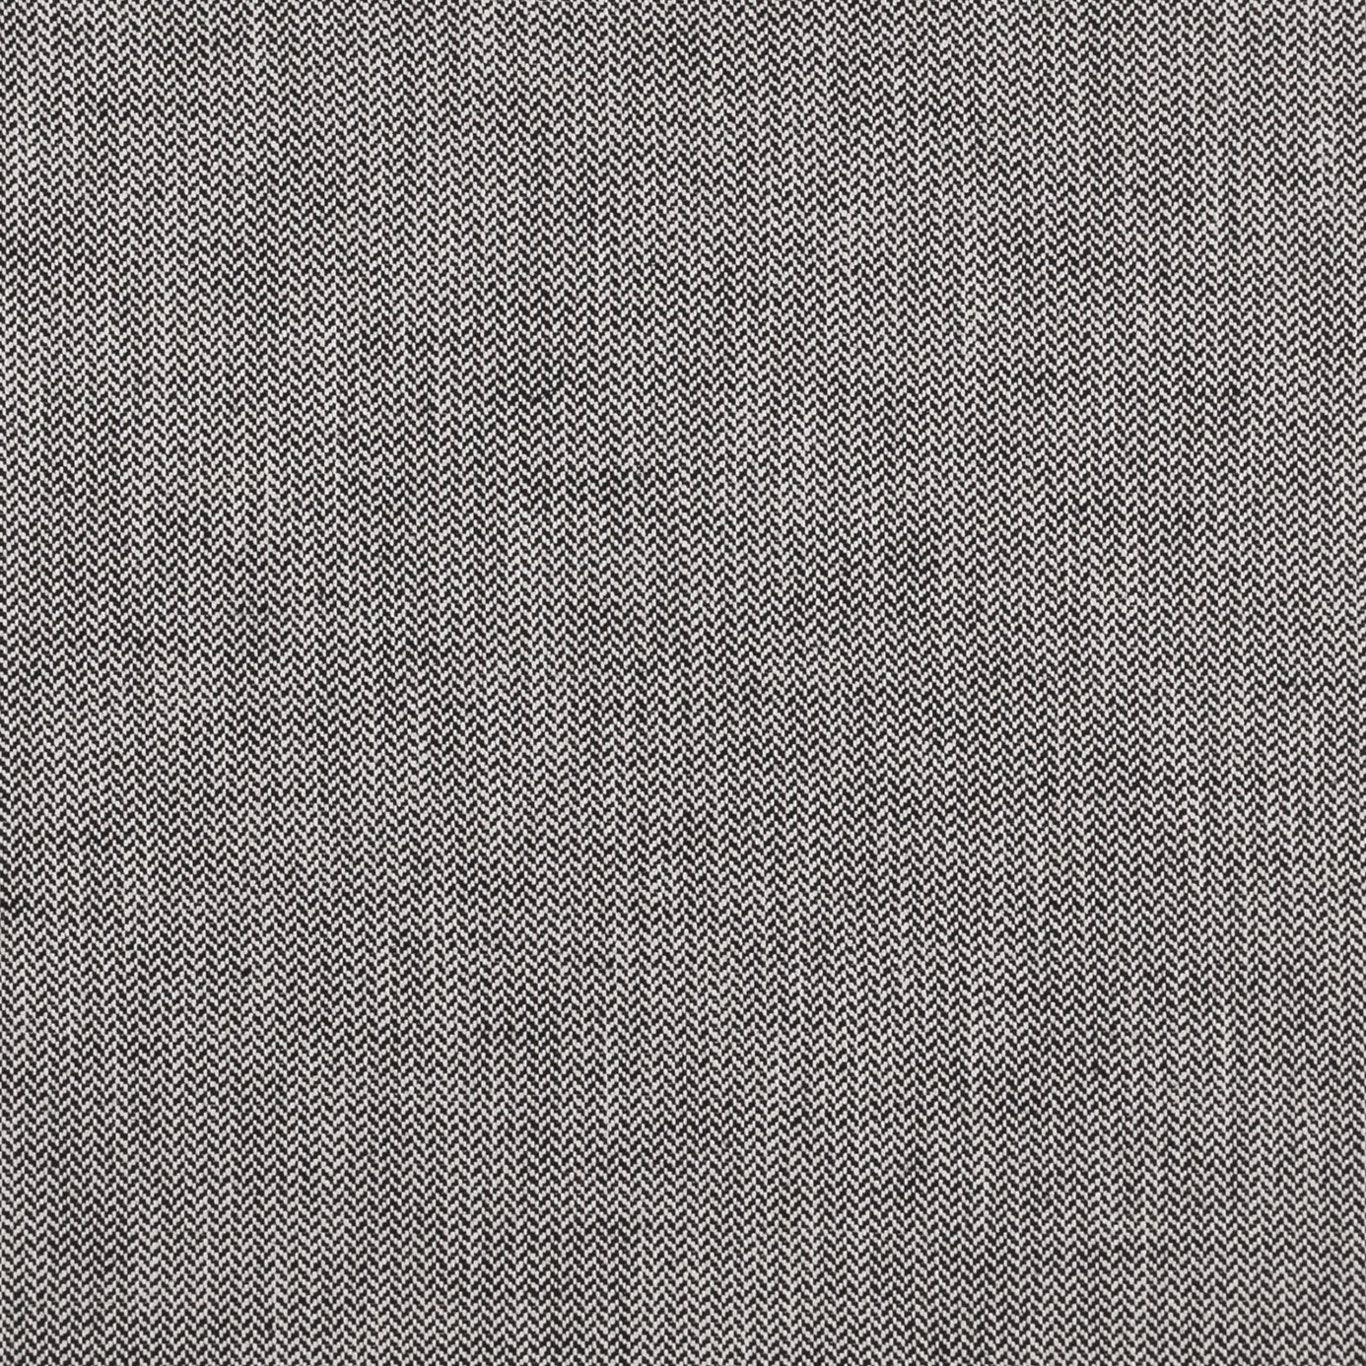 Bw1003 Fabric by Clarke & Clarke - F0875/01 - Black/White